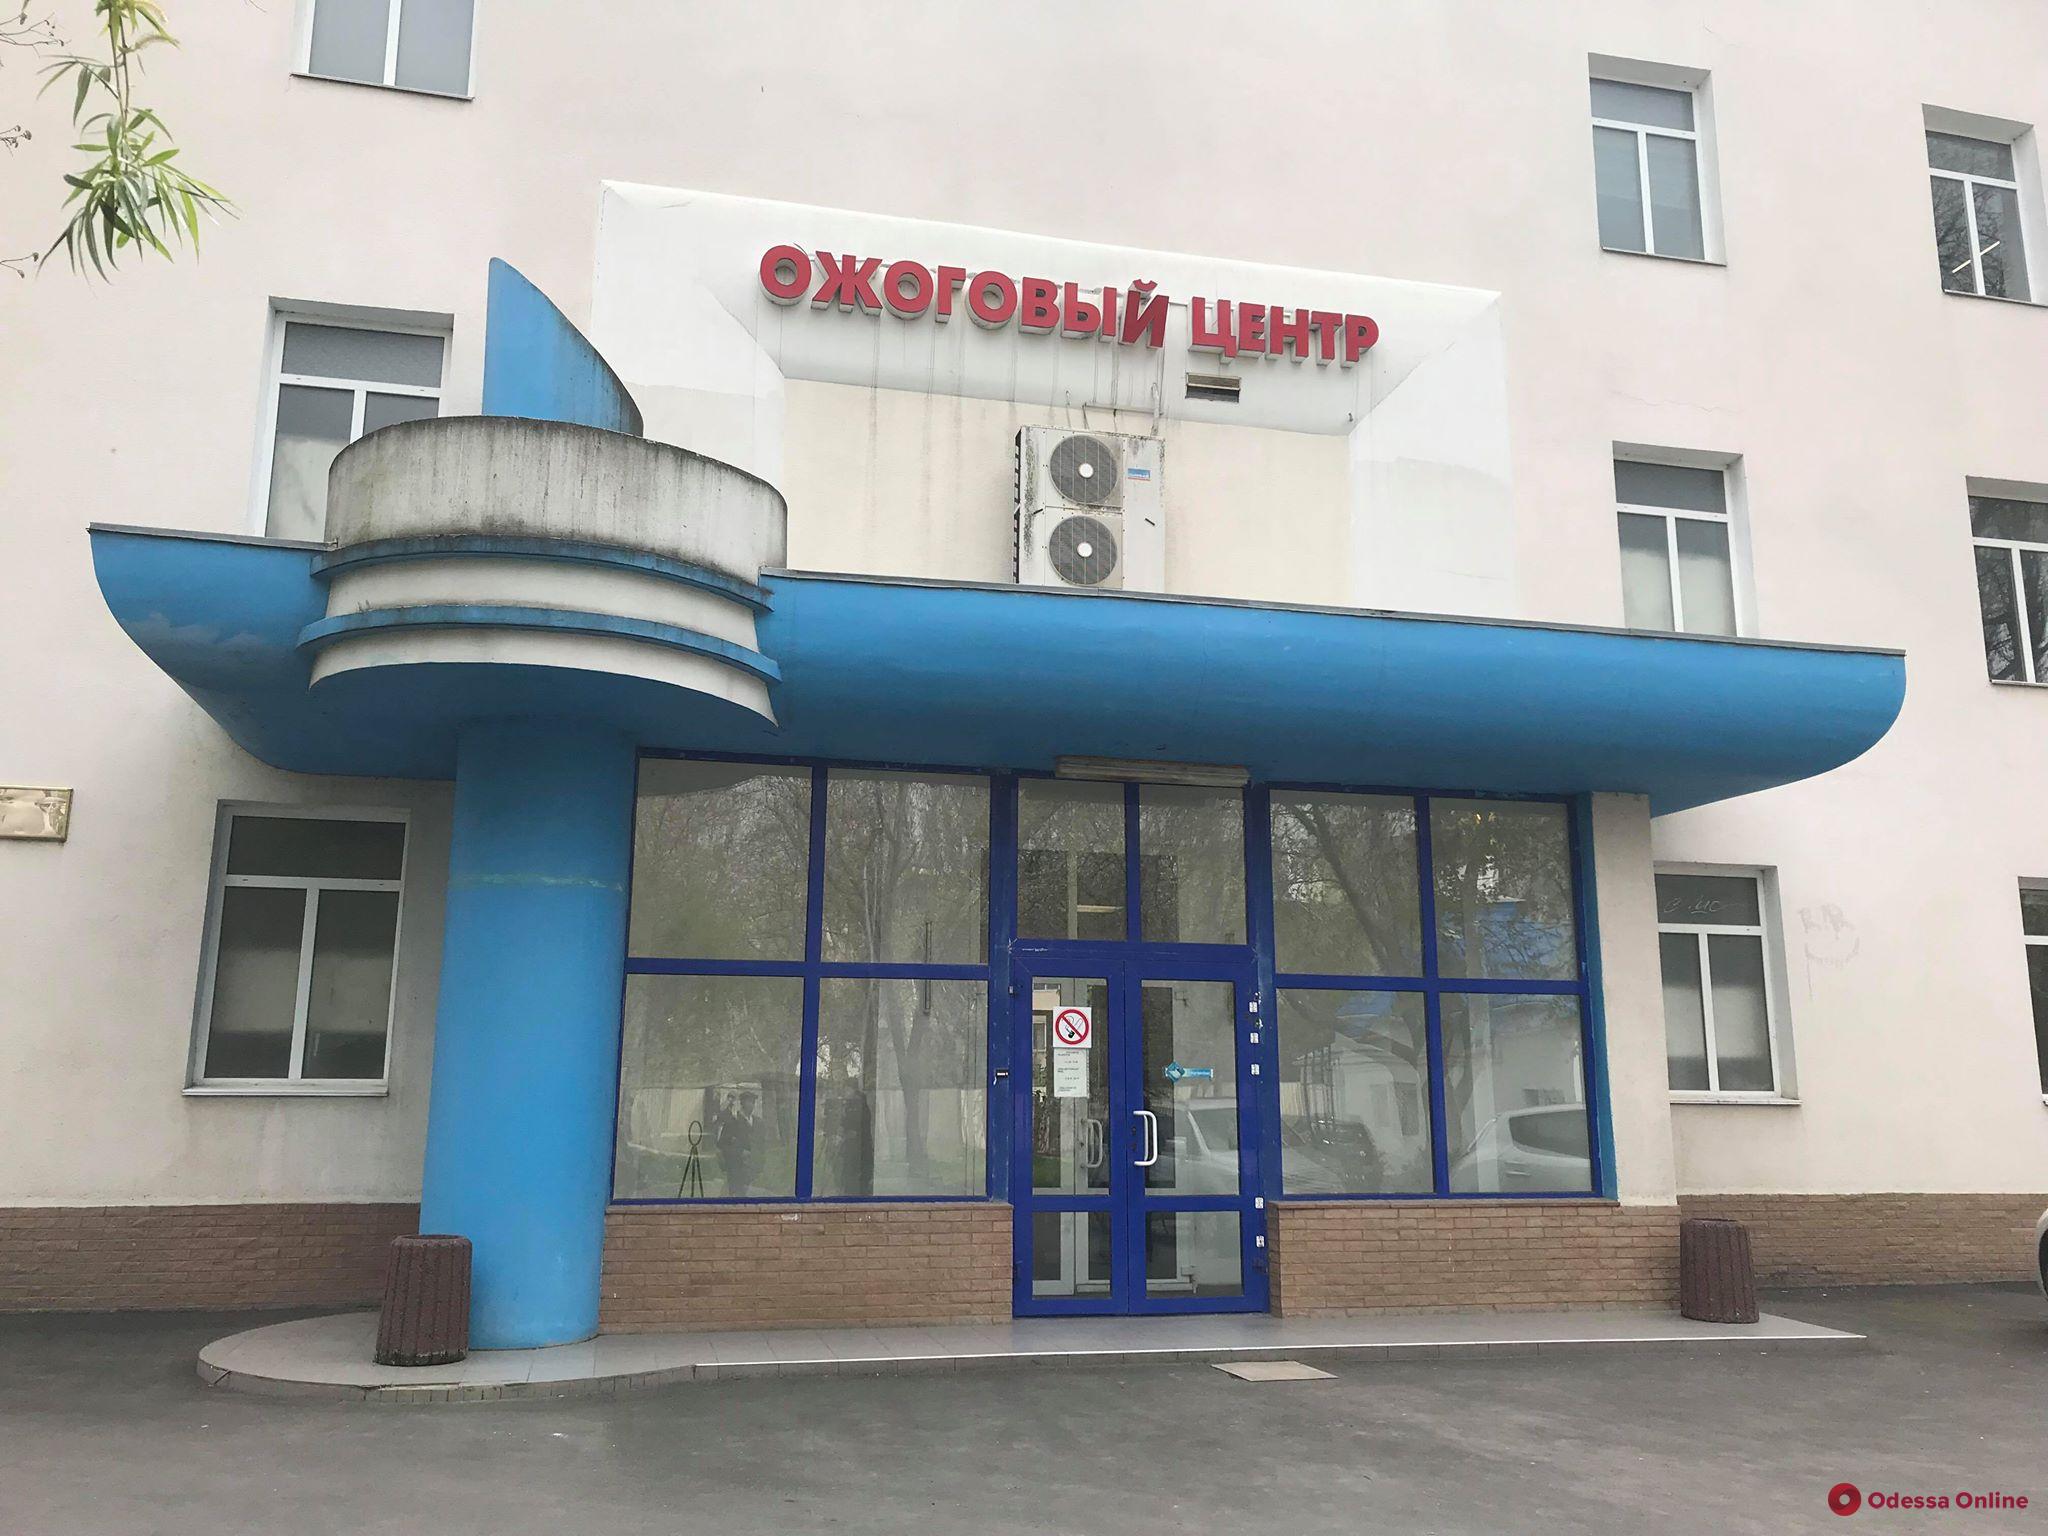 Одесса: пострадавший от удара током подросток скончался в больнице